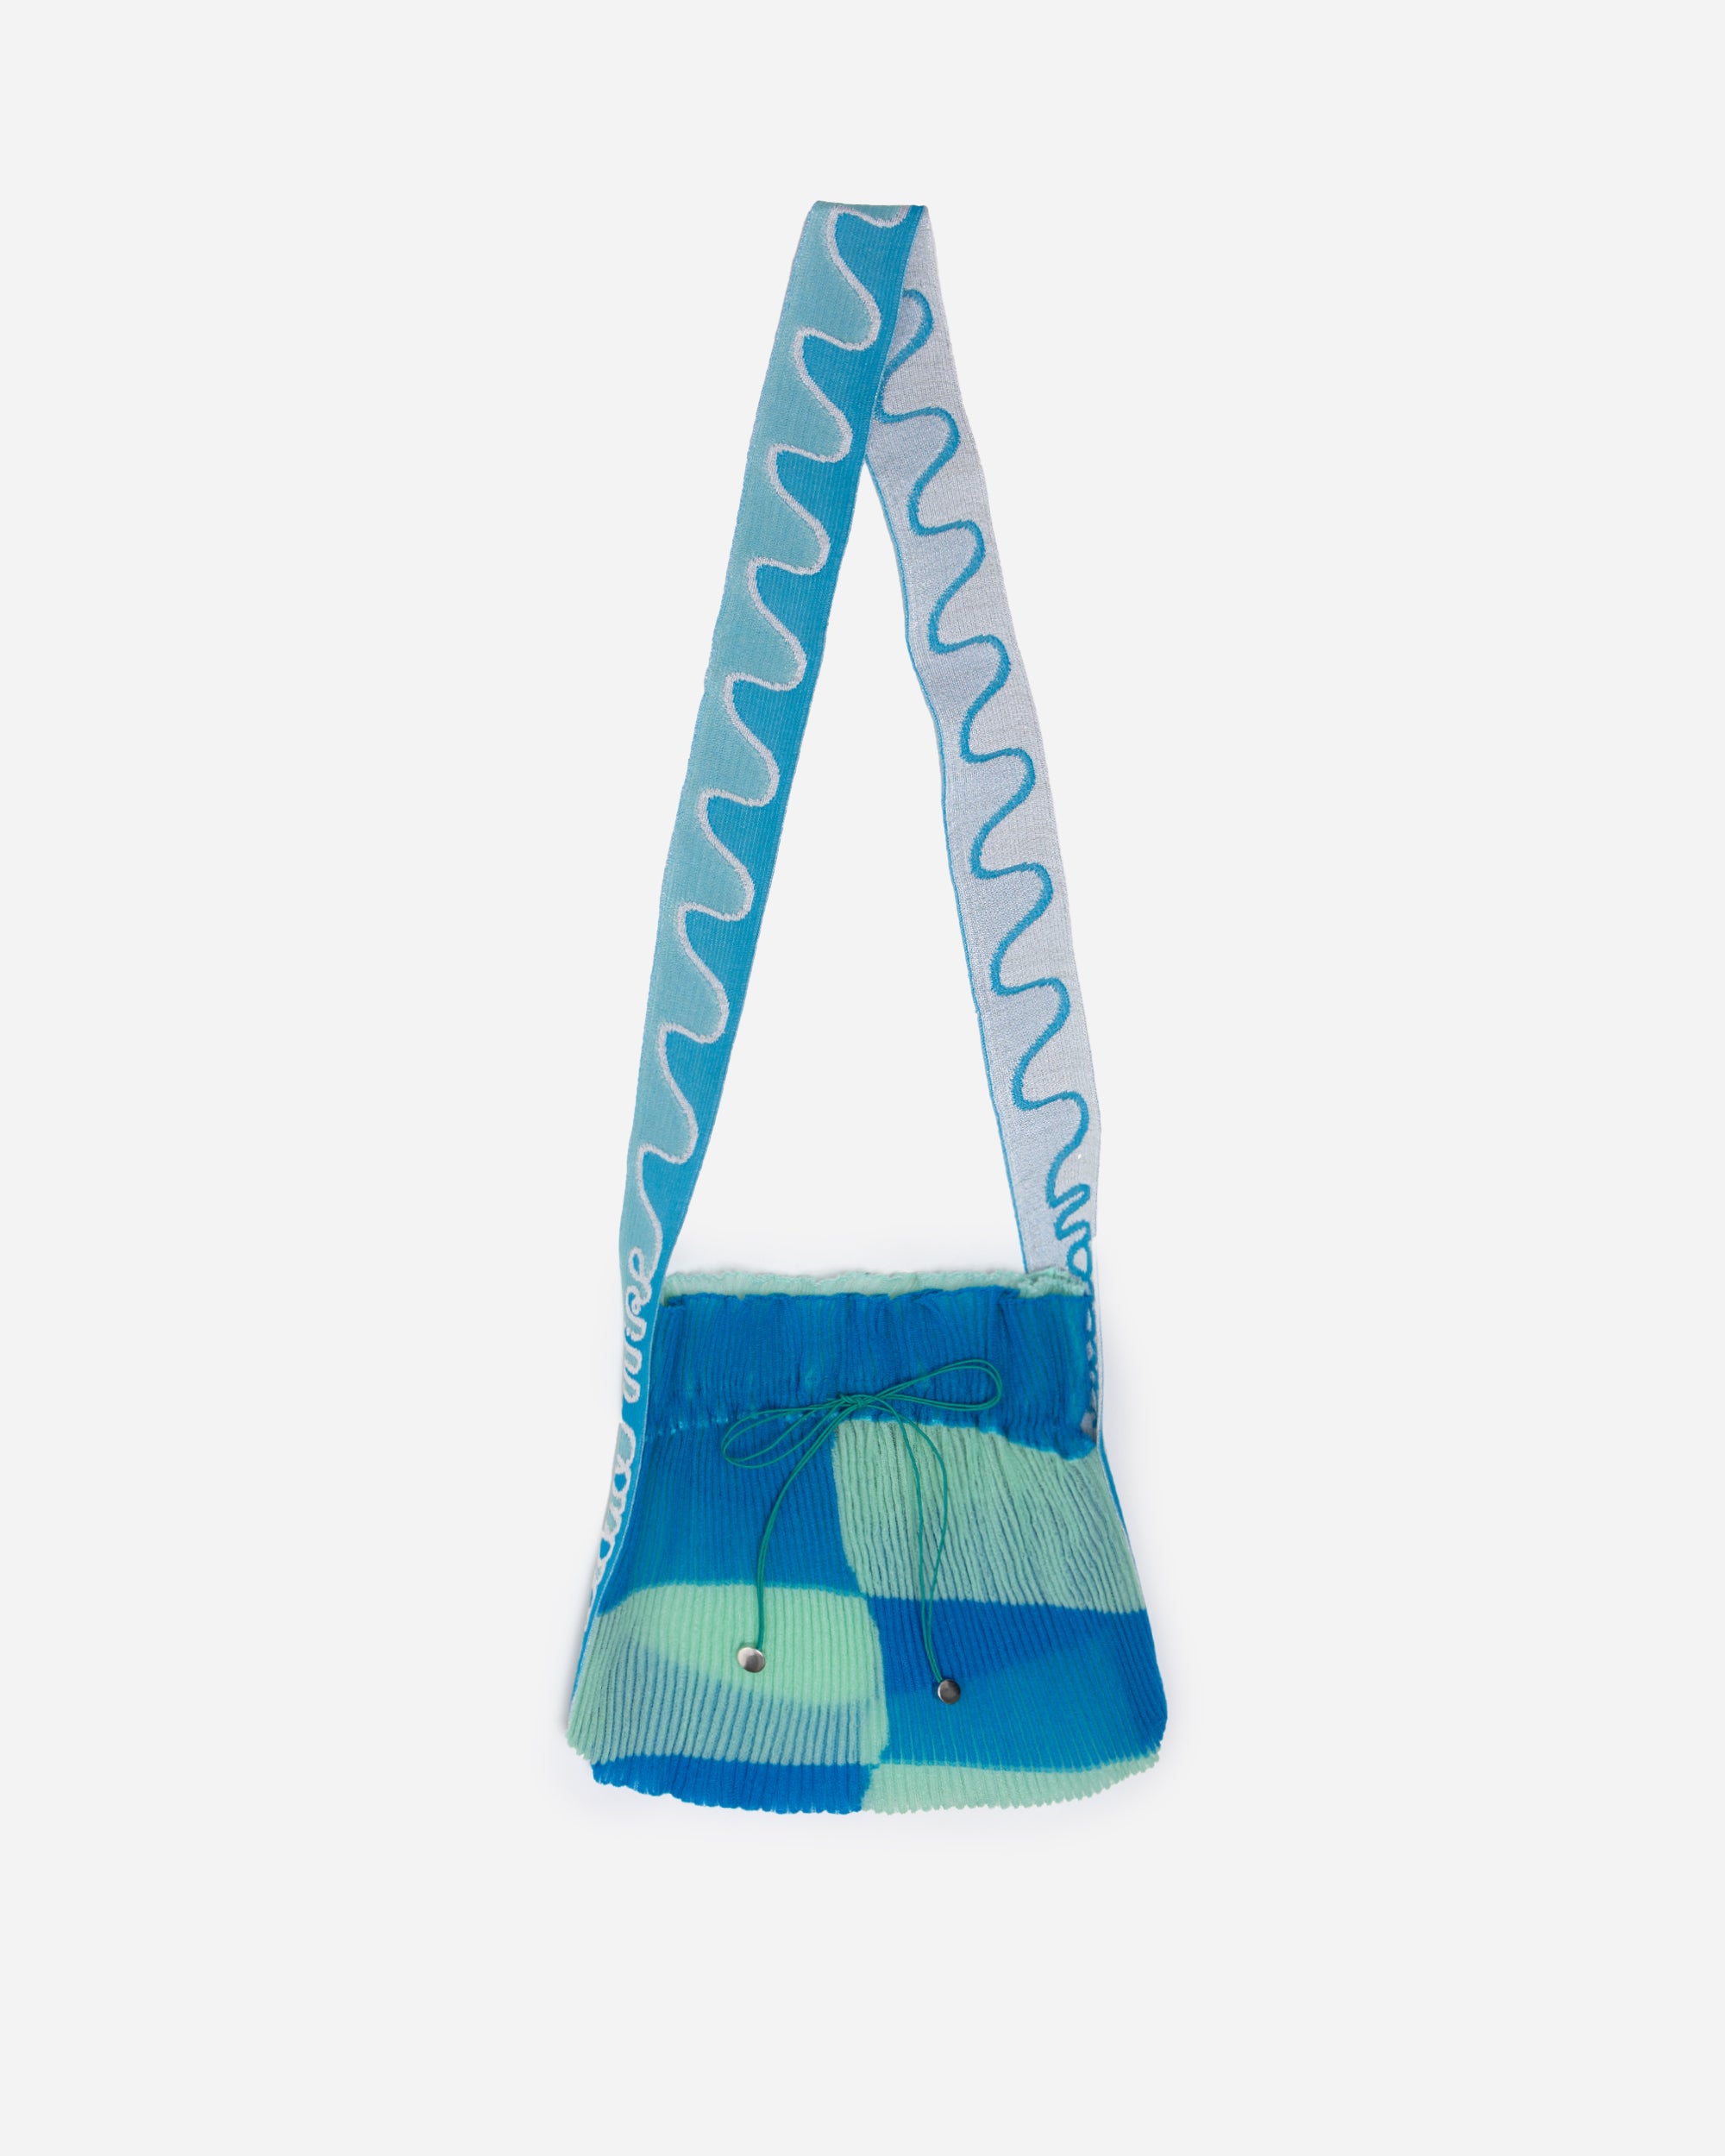 Nadia Wire Twisted frill bag blue/mint green 224-BLU